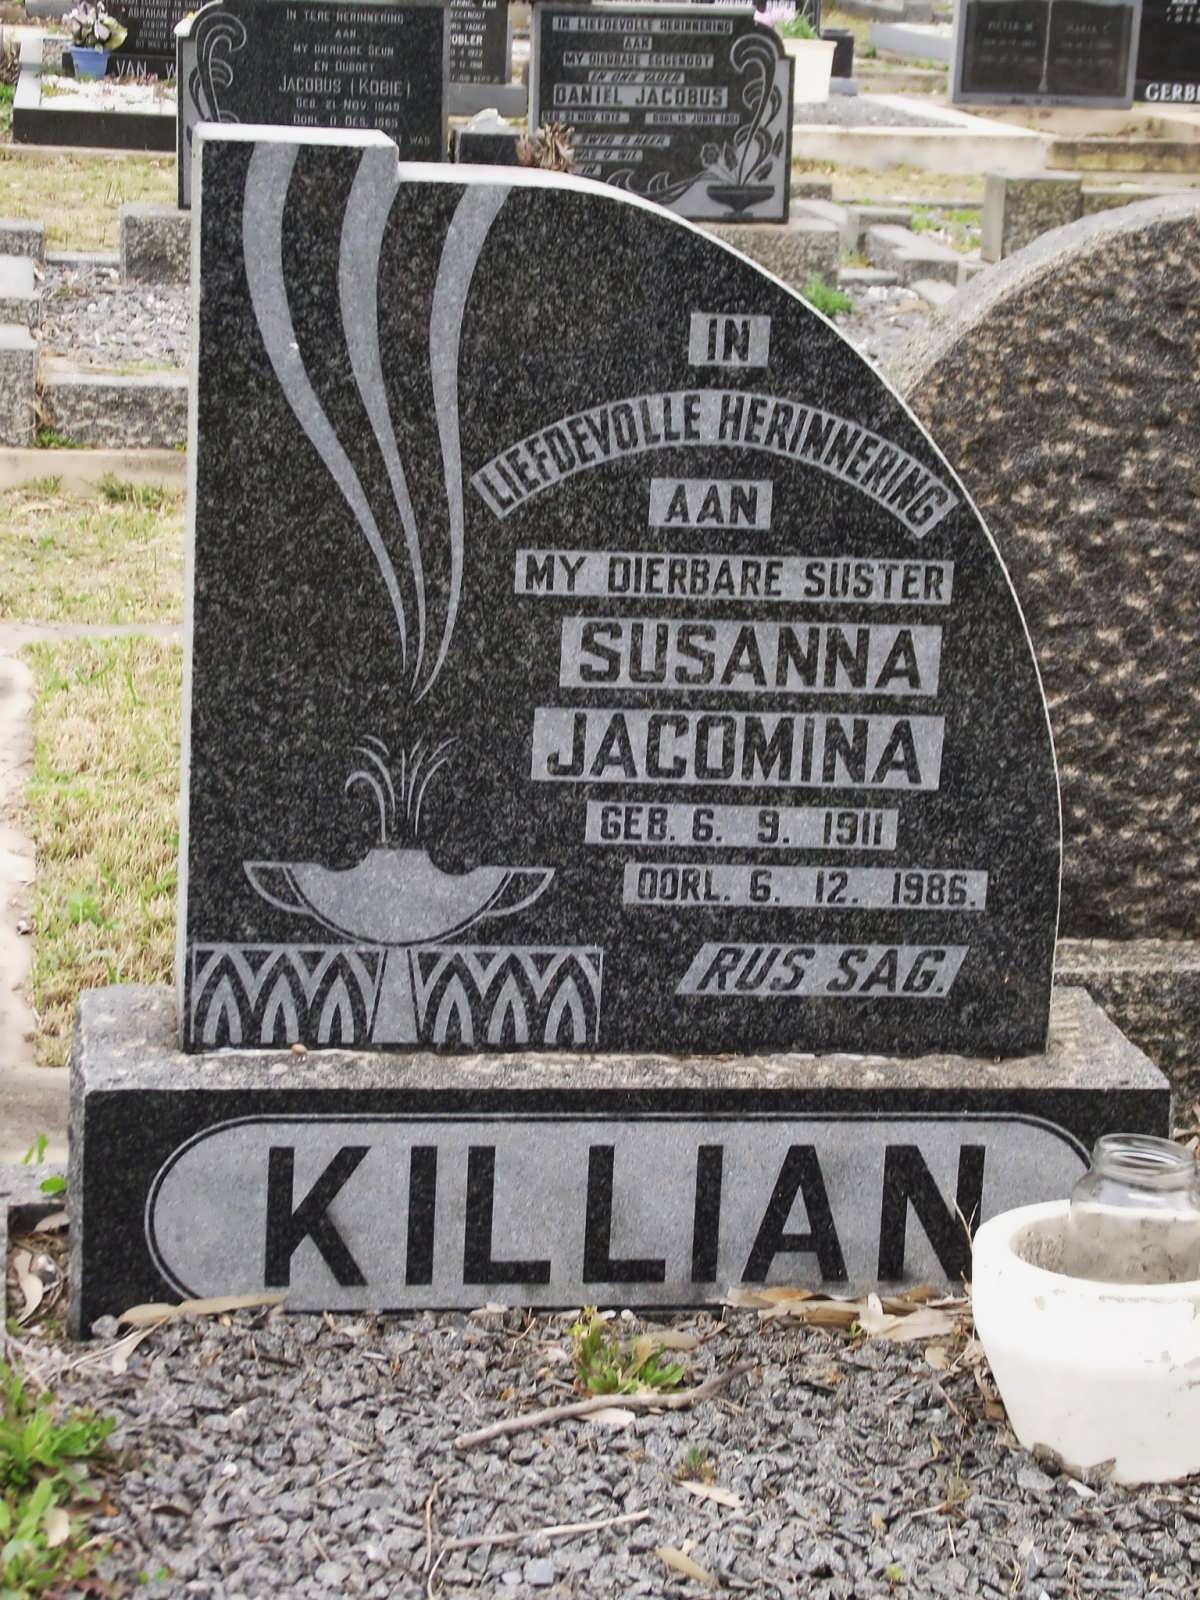 KILLIAN Susanna Jacomina 1911-1986